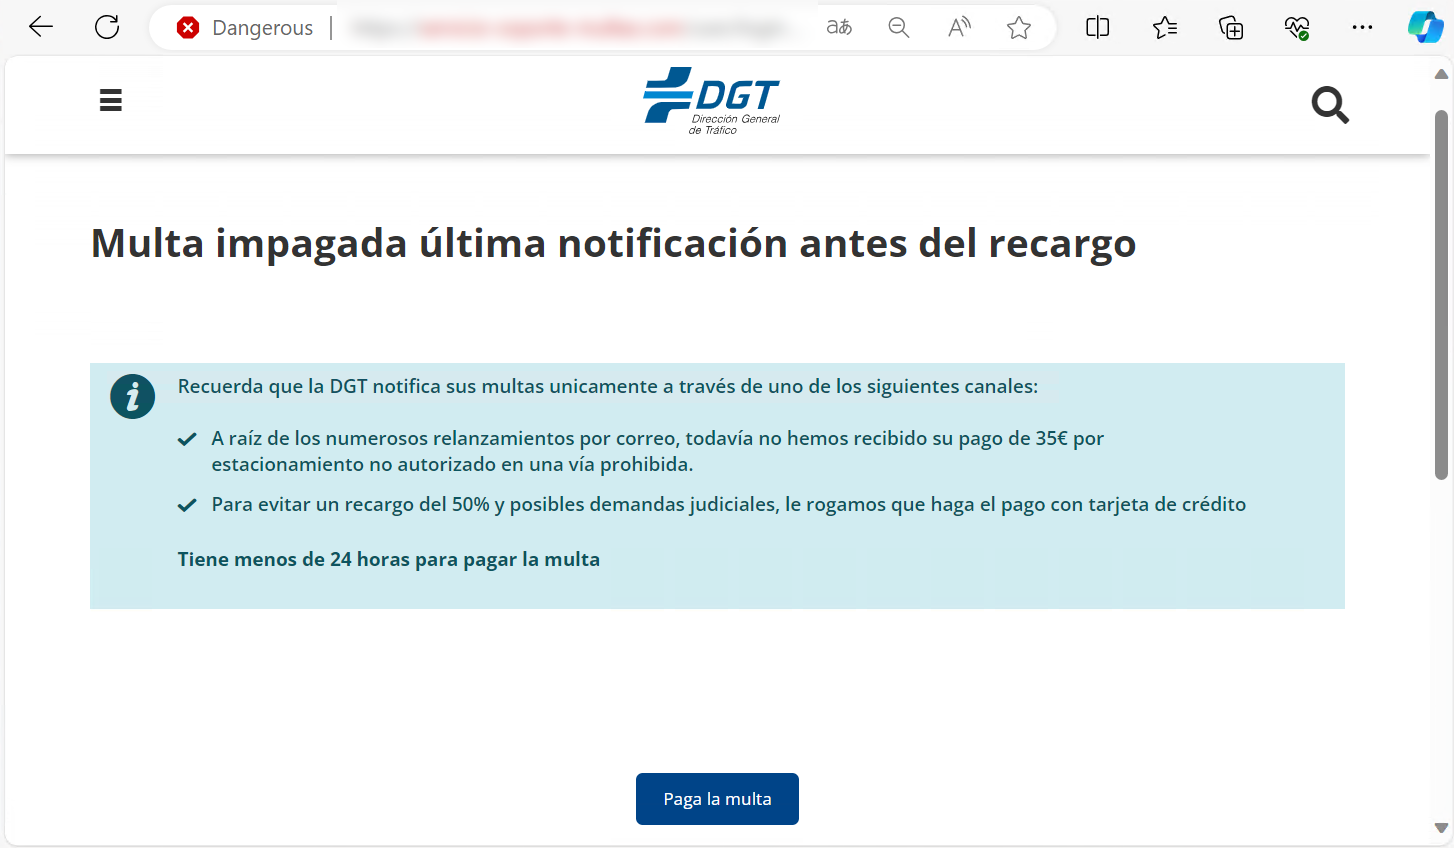 En la imagen se muestra la página web fraudulenta que se hace pasar por el portal de la DGT donde nos indica que existe una presunta multa impagada.